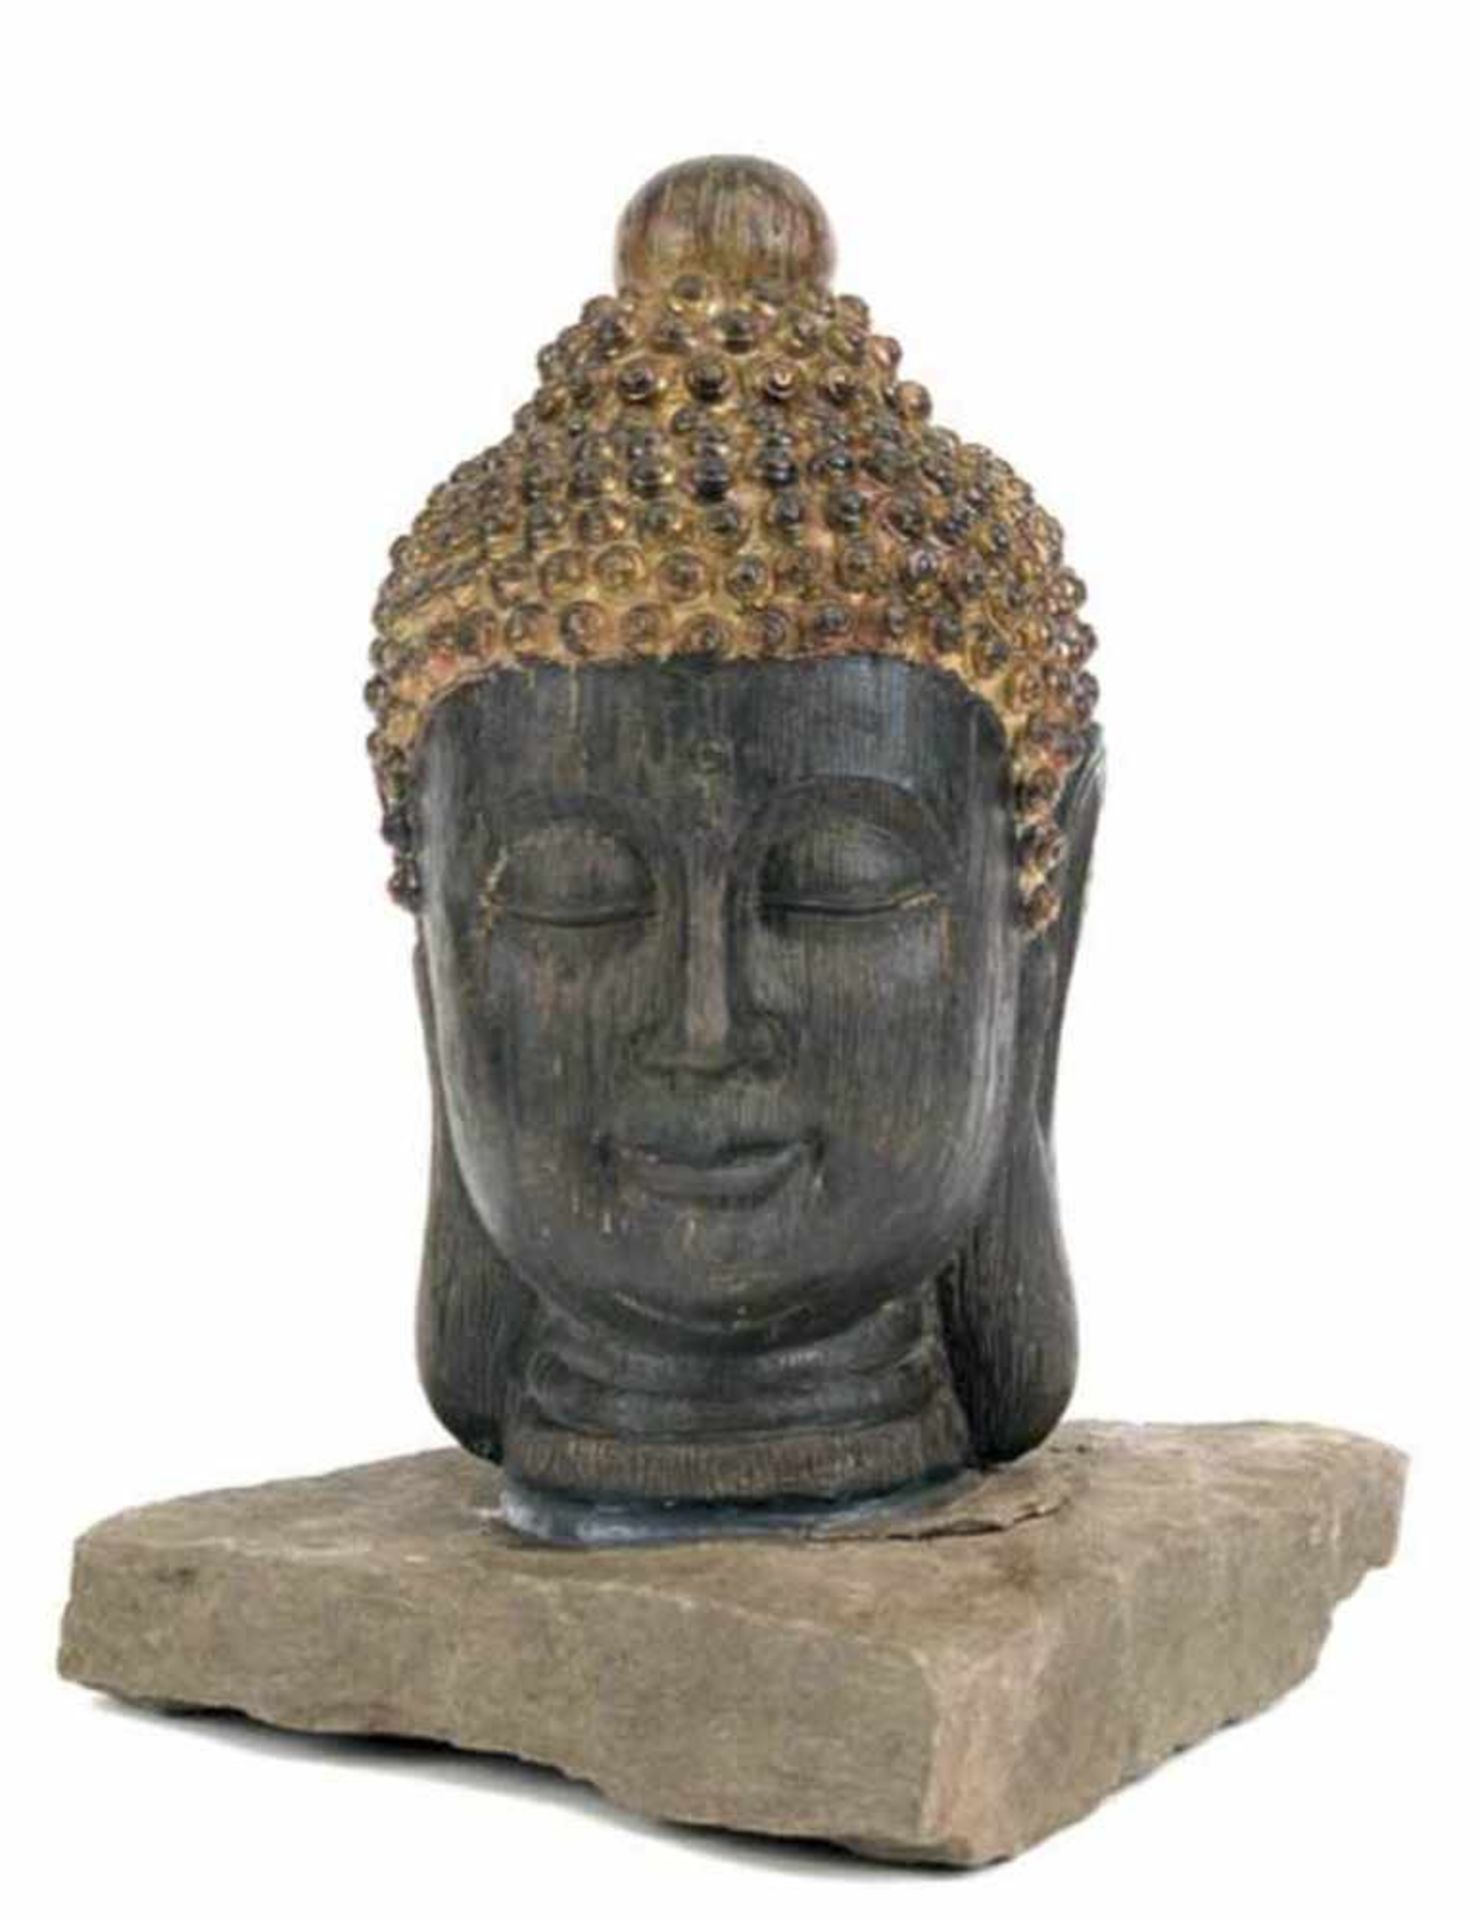 Gartenfigur "Buddha", Holz geschnitzt, auf Naturstein, wetterfest, H. 33,5 cm- - -23.80 % buyer's